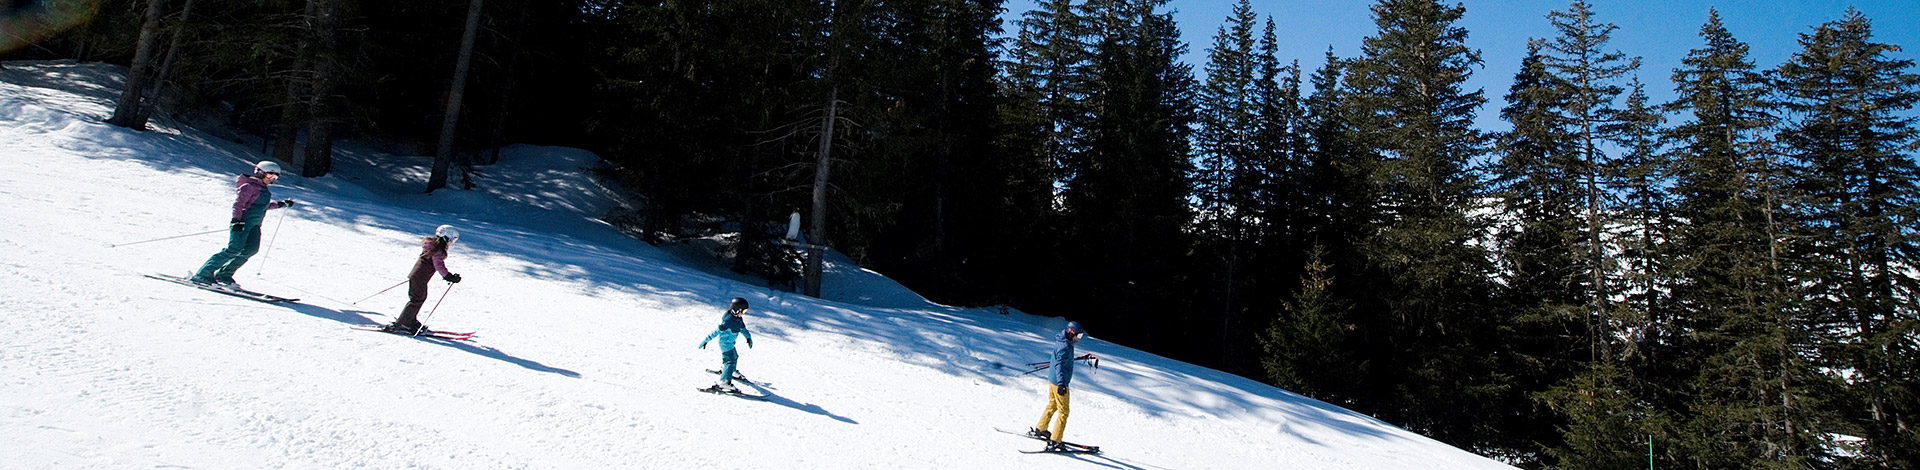 Ski en famille dans les forêts de Méribel